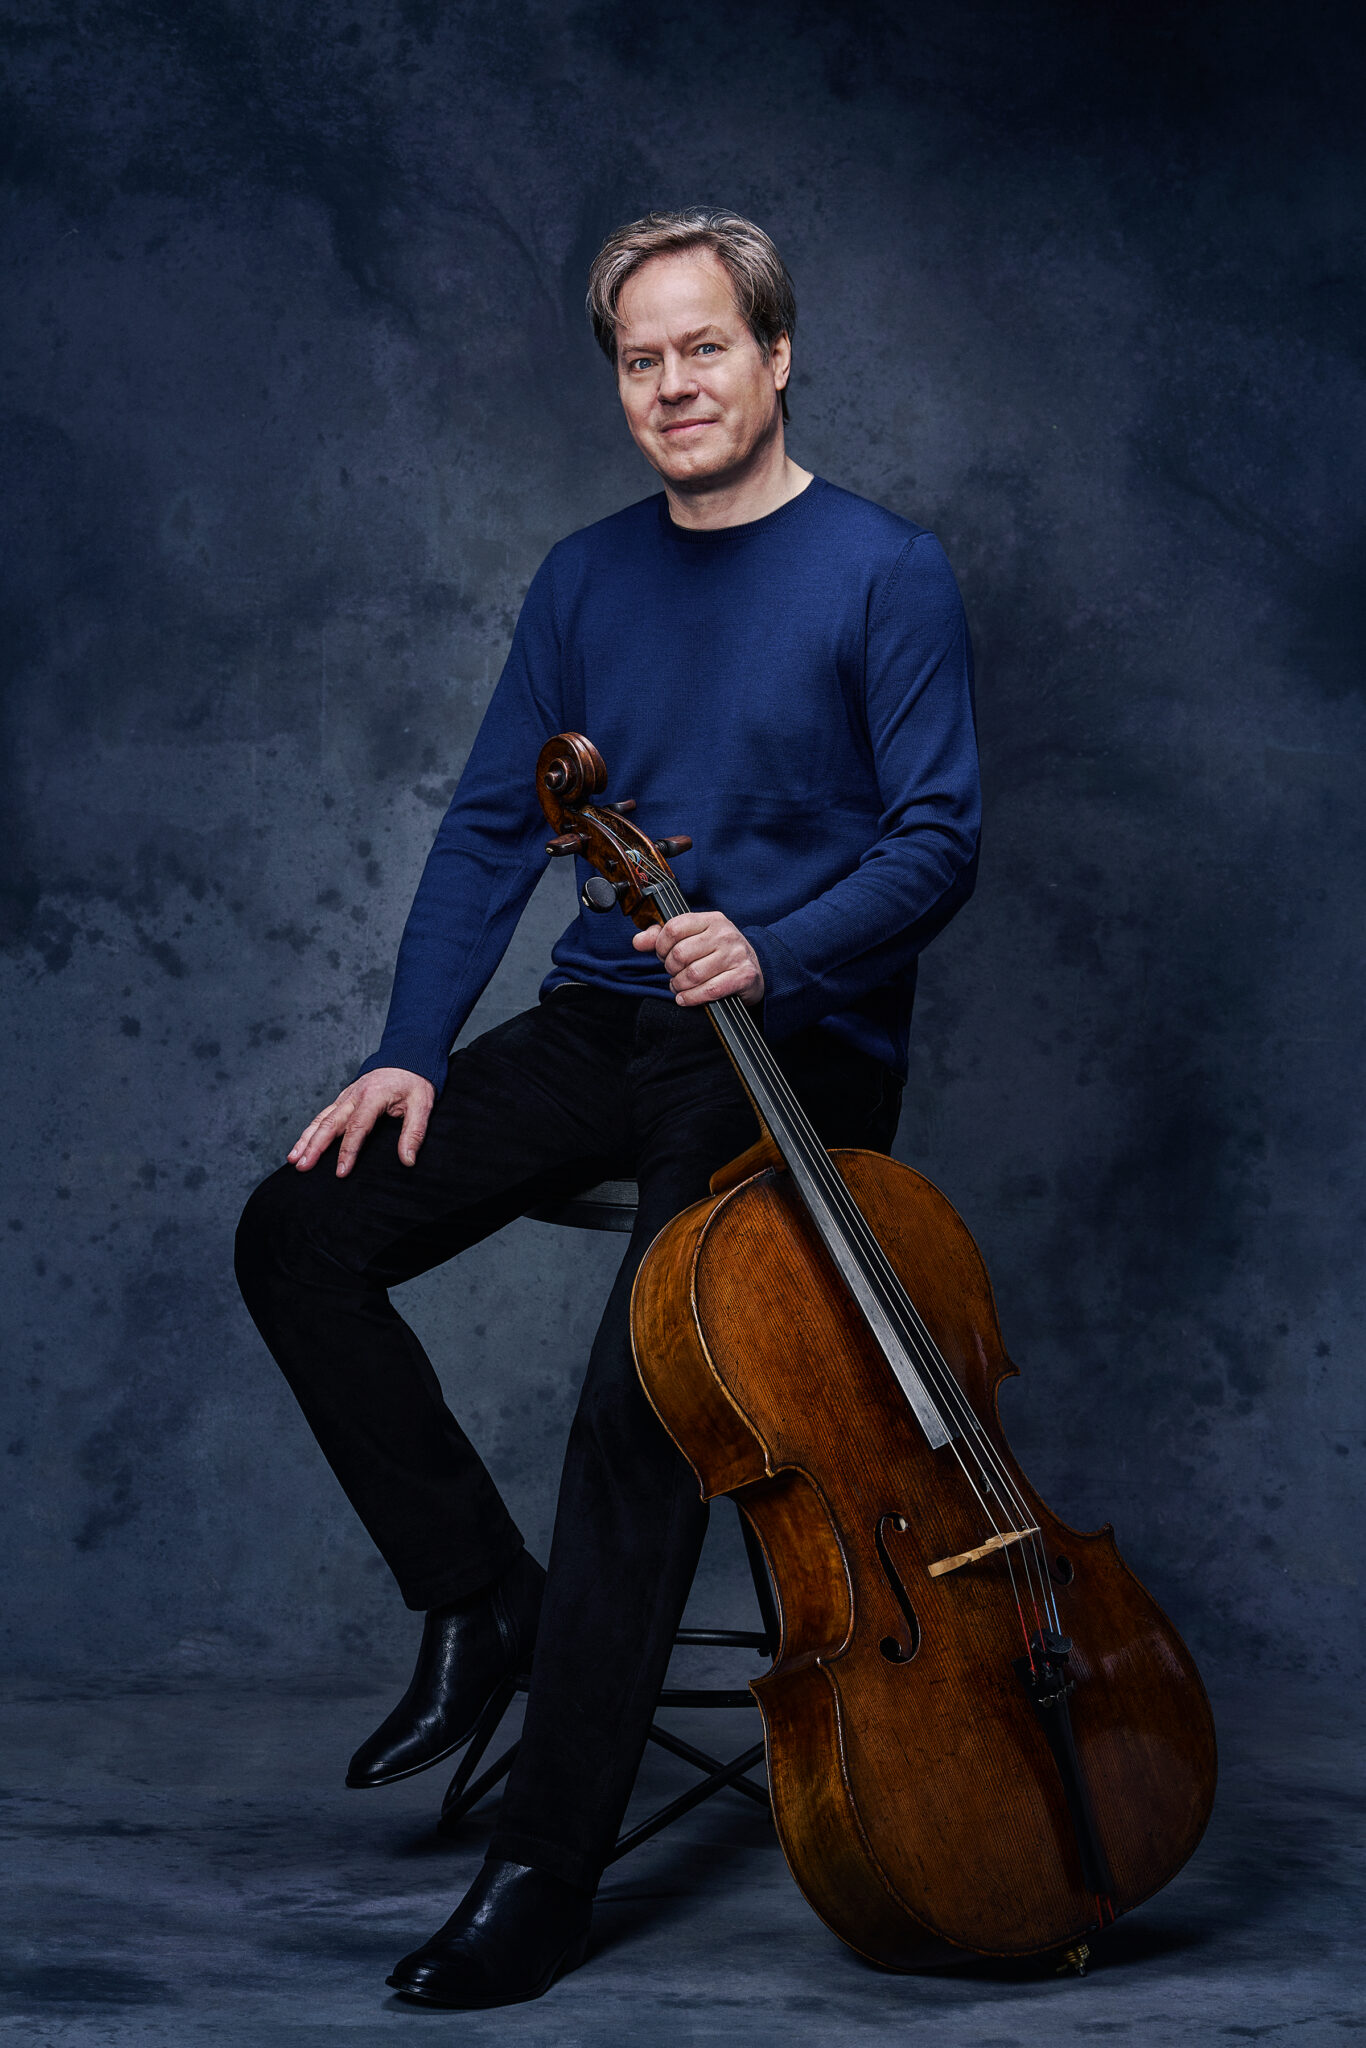 Cellist Jan Vogler ist seit 2008 Intendant der Dresdner Musikfestspiele und seit 2001 Künstlerischer Leiter des Moritzburg Festivals.